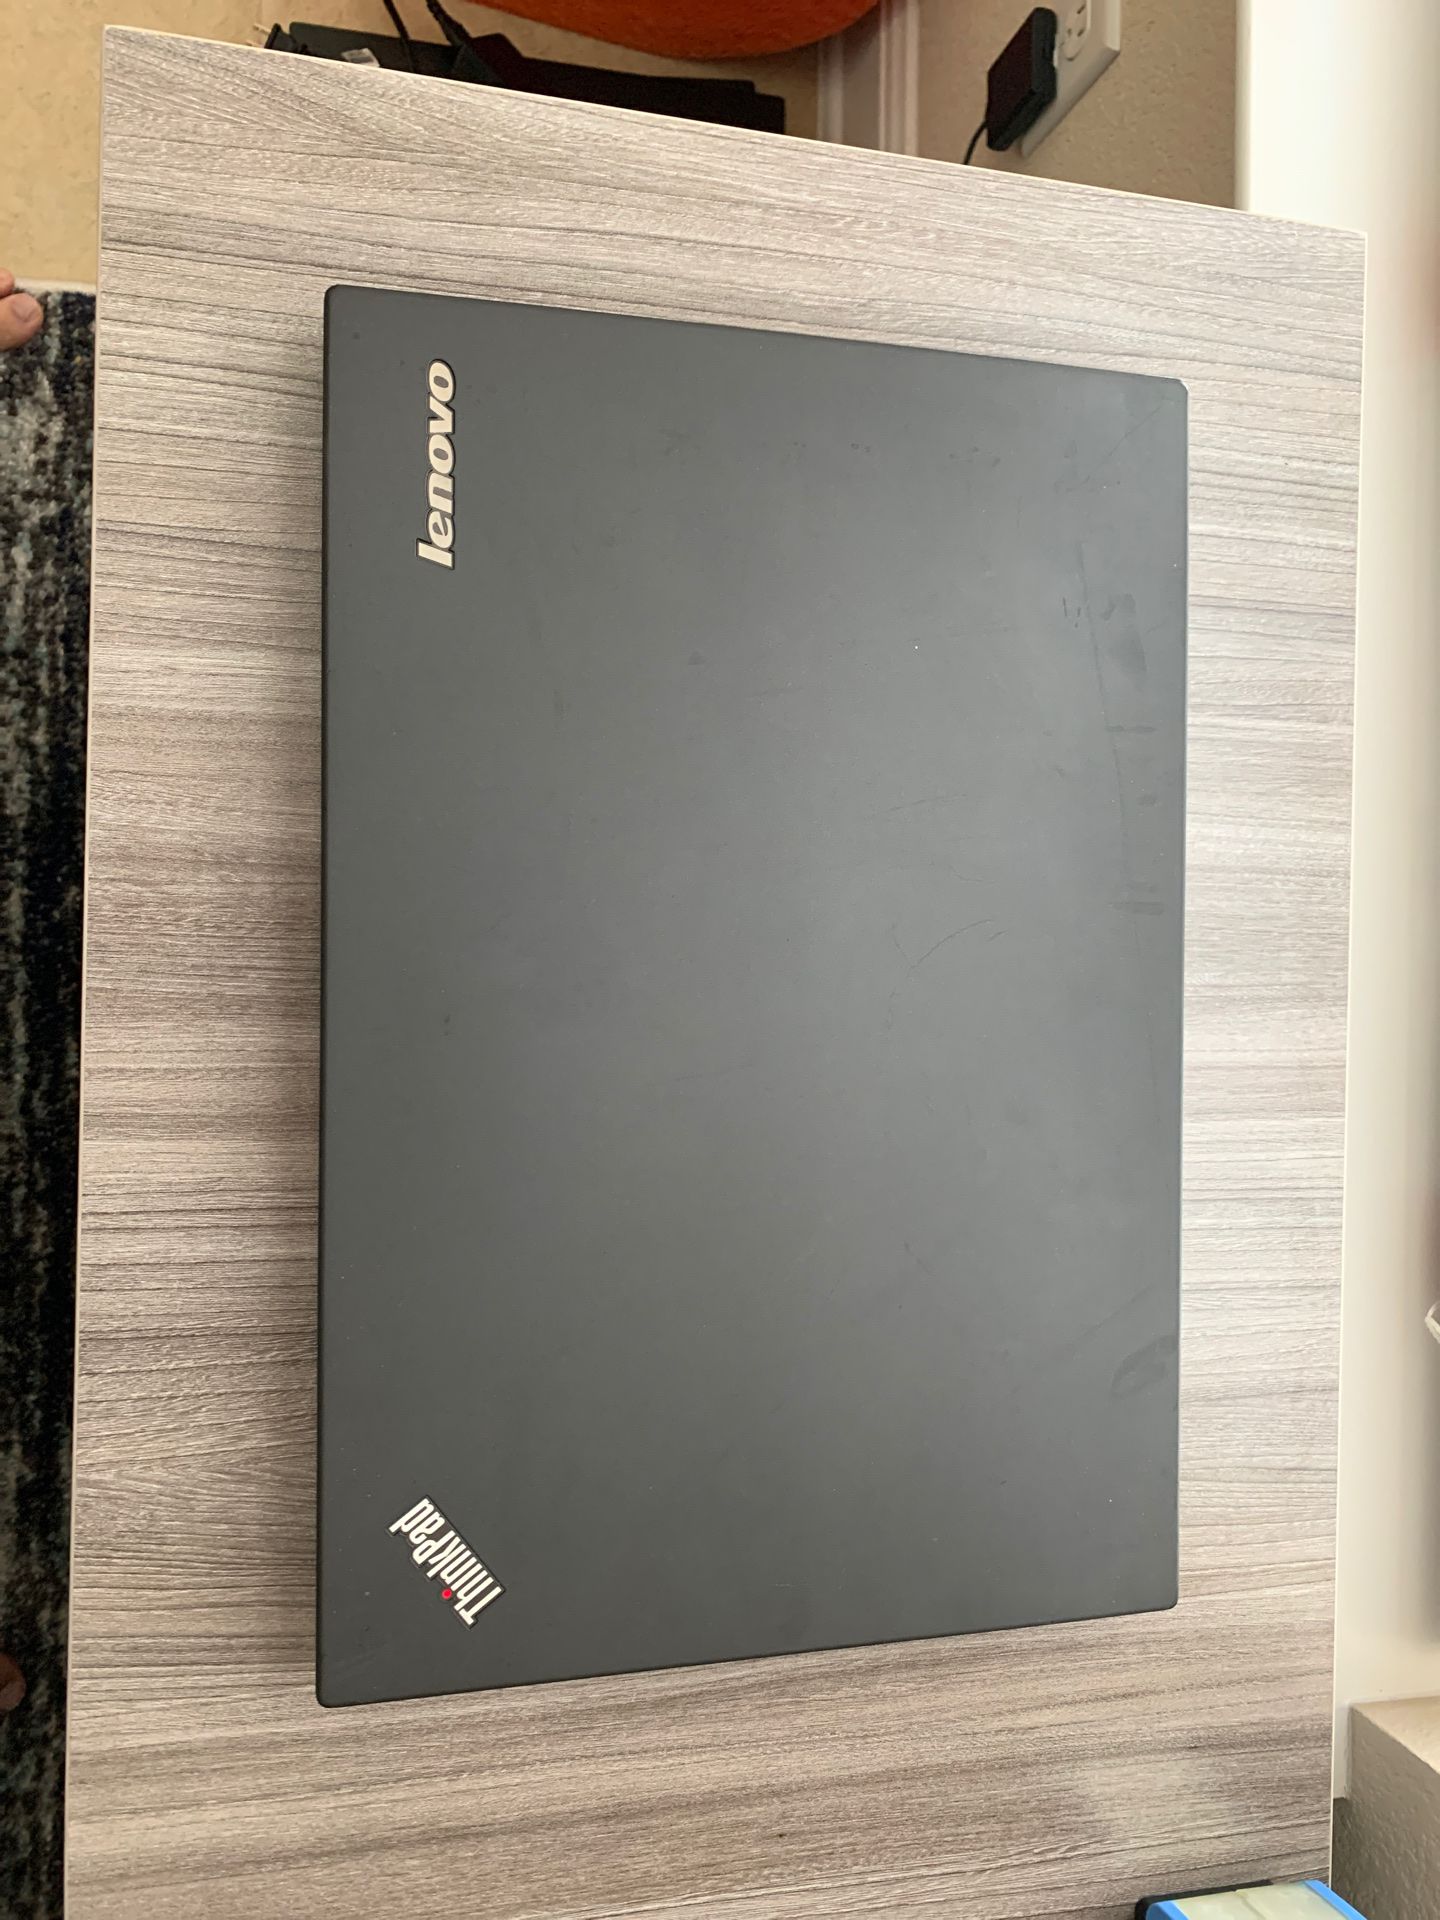 Lenovo Thinkpad W550s i7-5600 8GB 256SSD win 10 MS office